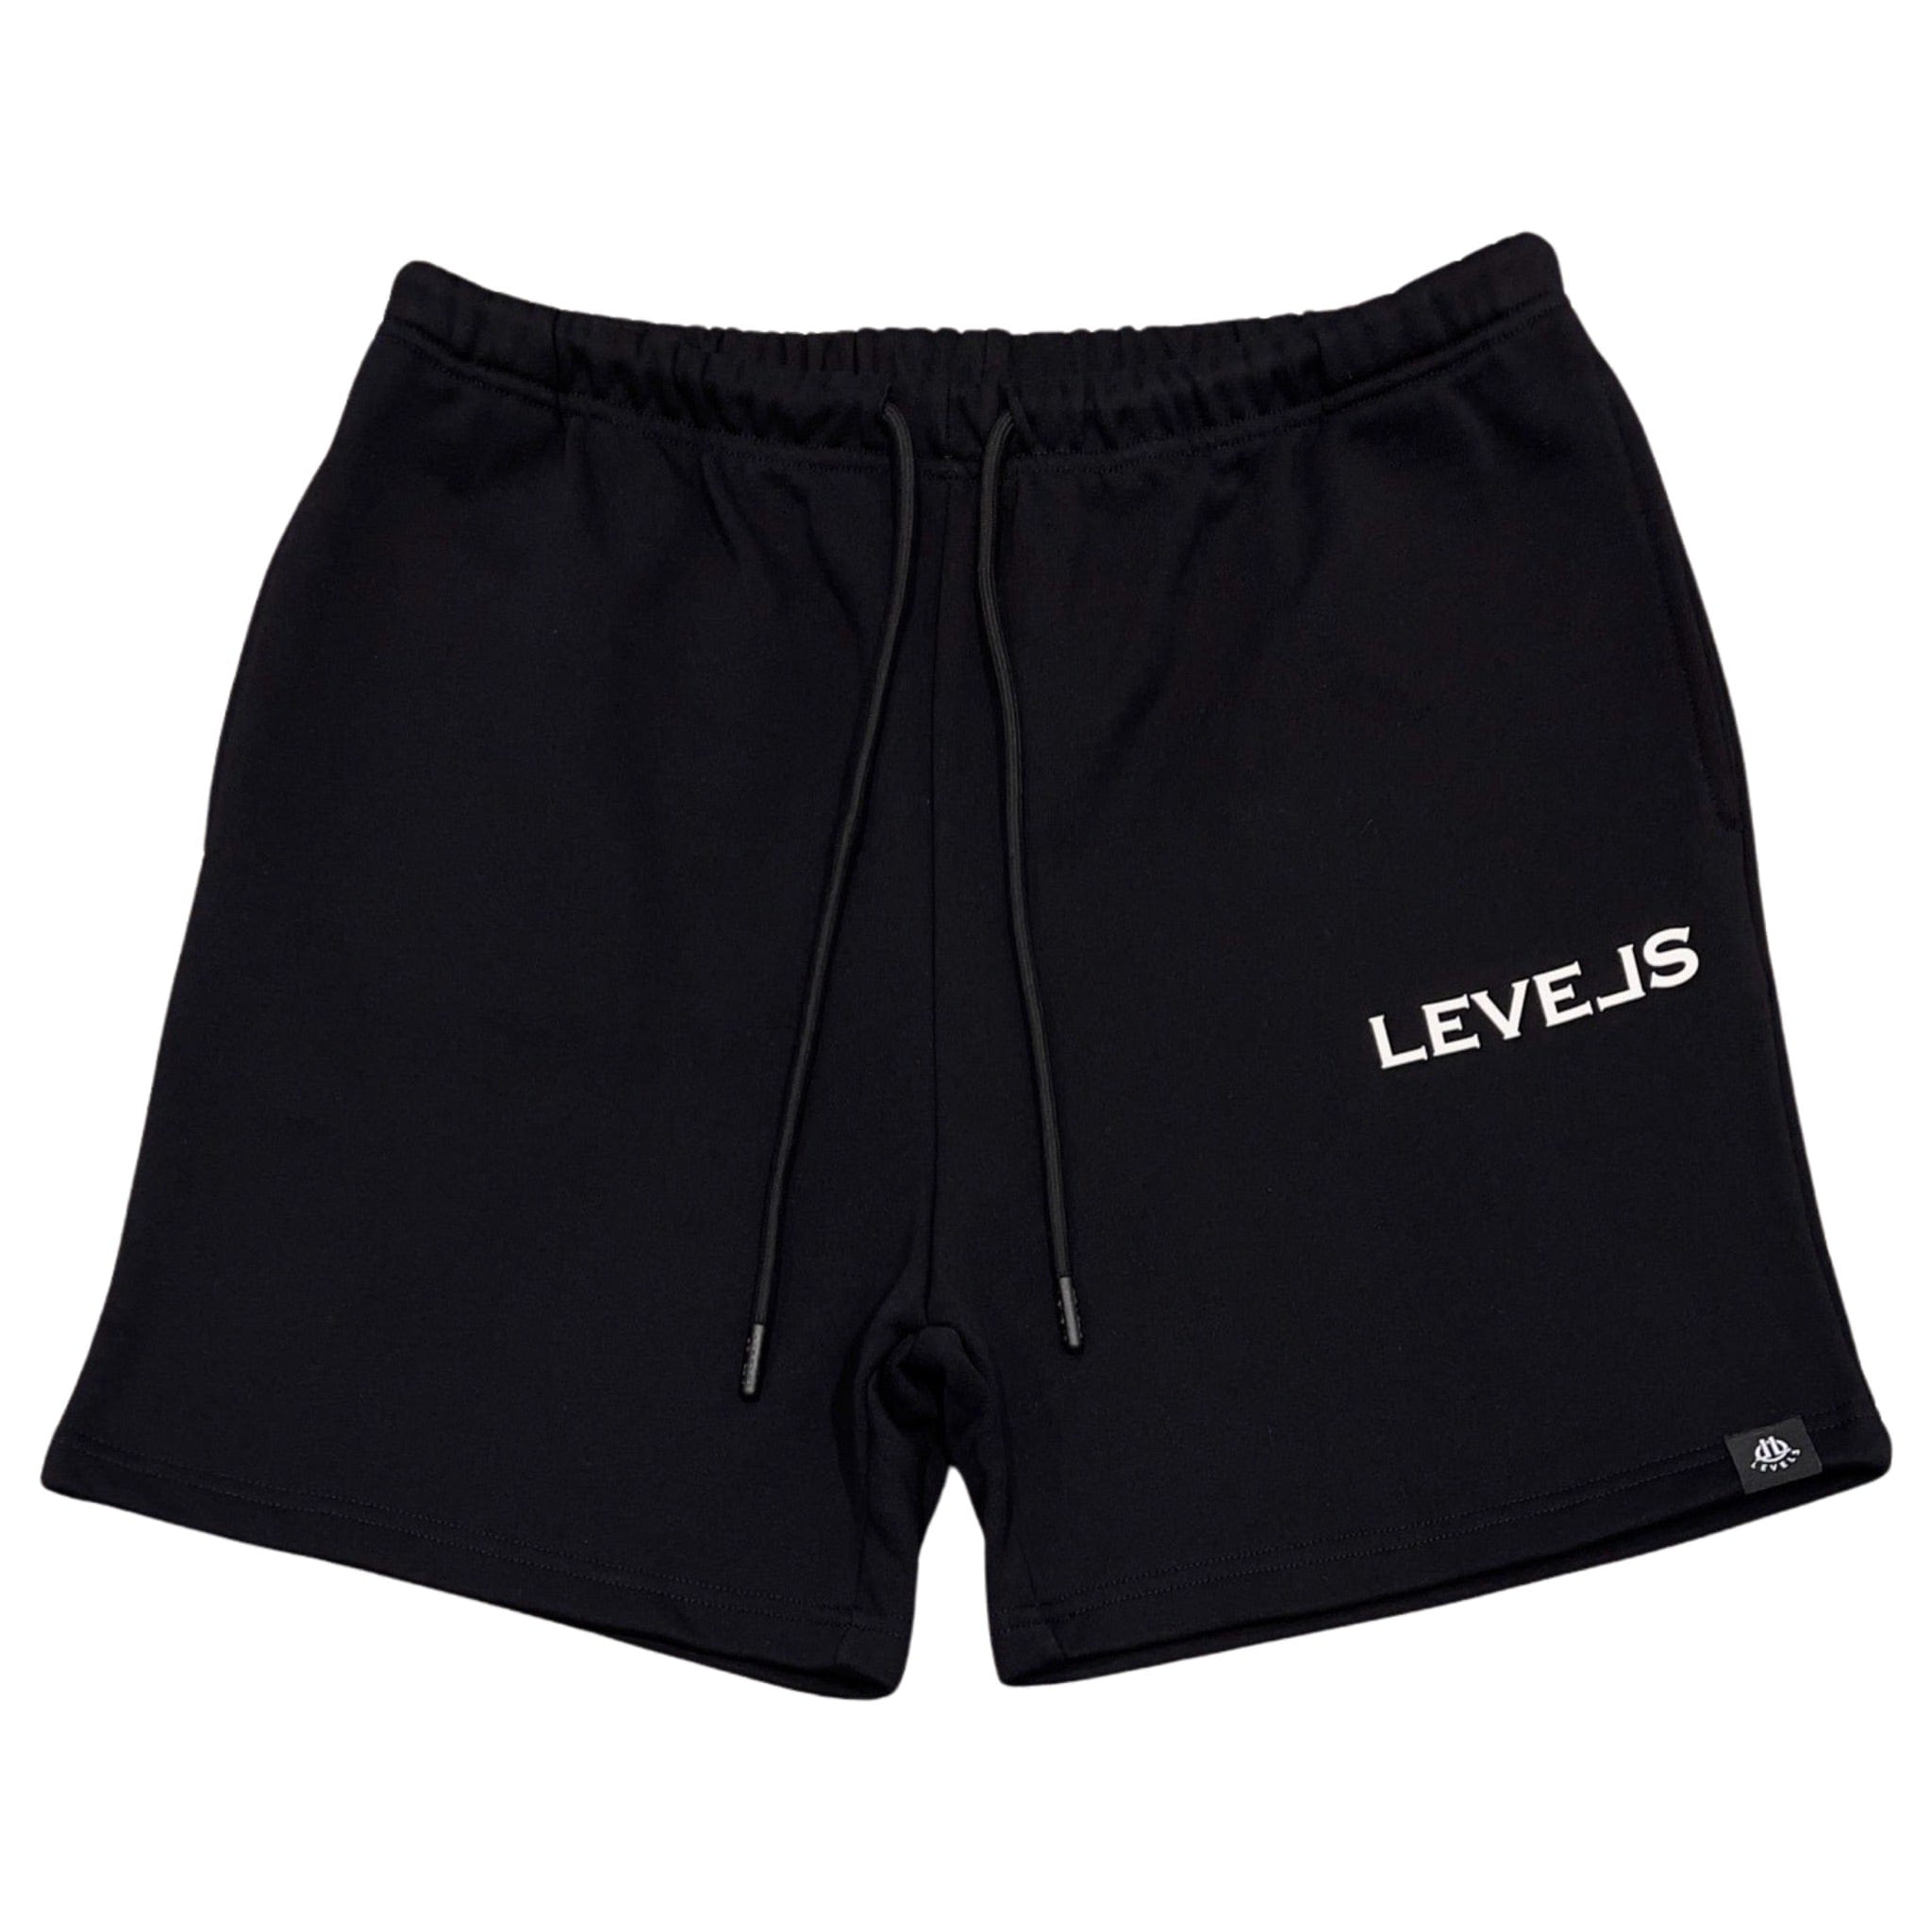 LEVELS, LLC Shorts LEVELS PREMIUM SHORTS